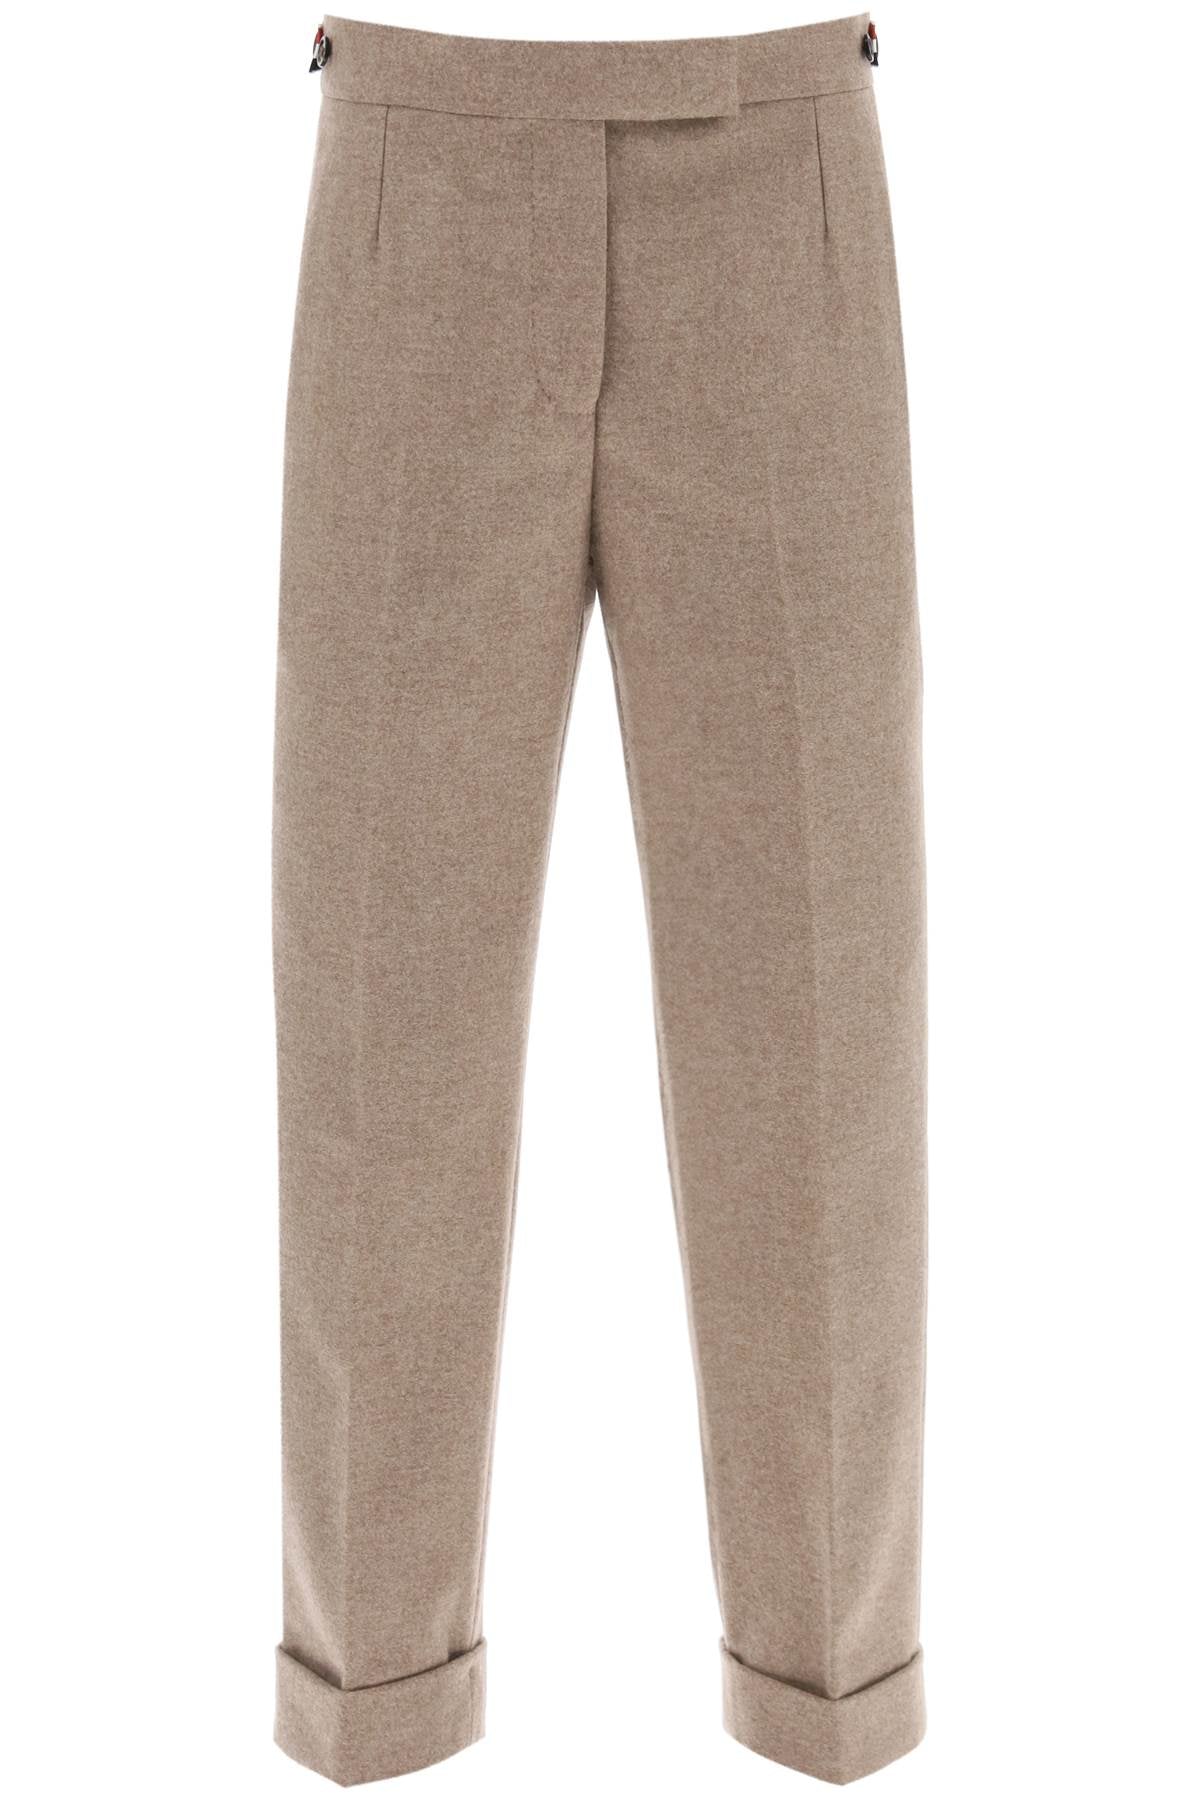 Thom browne cropped wool-flannel pants-0